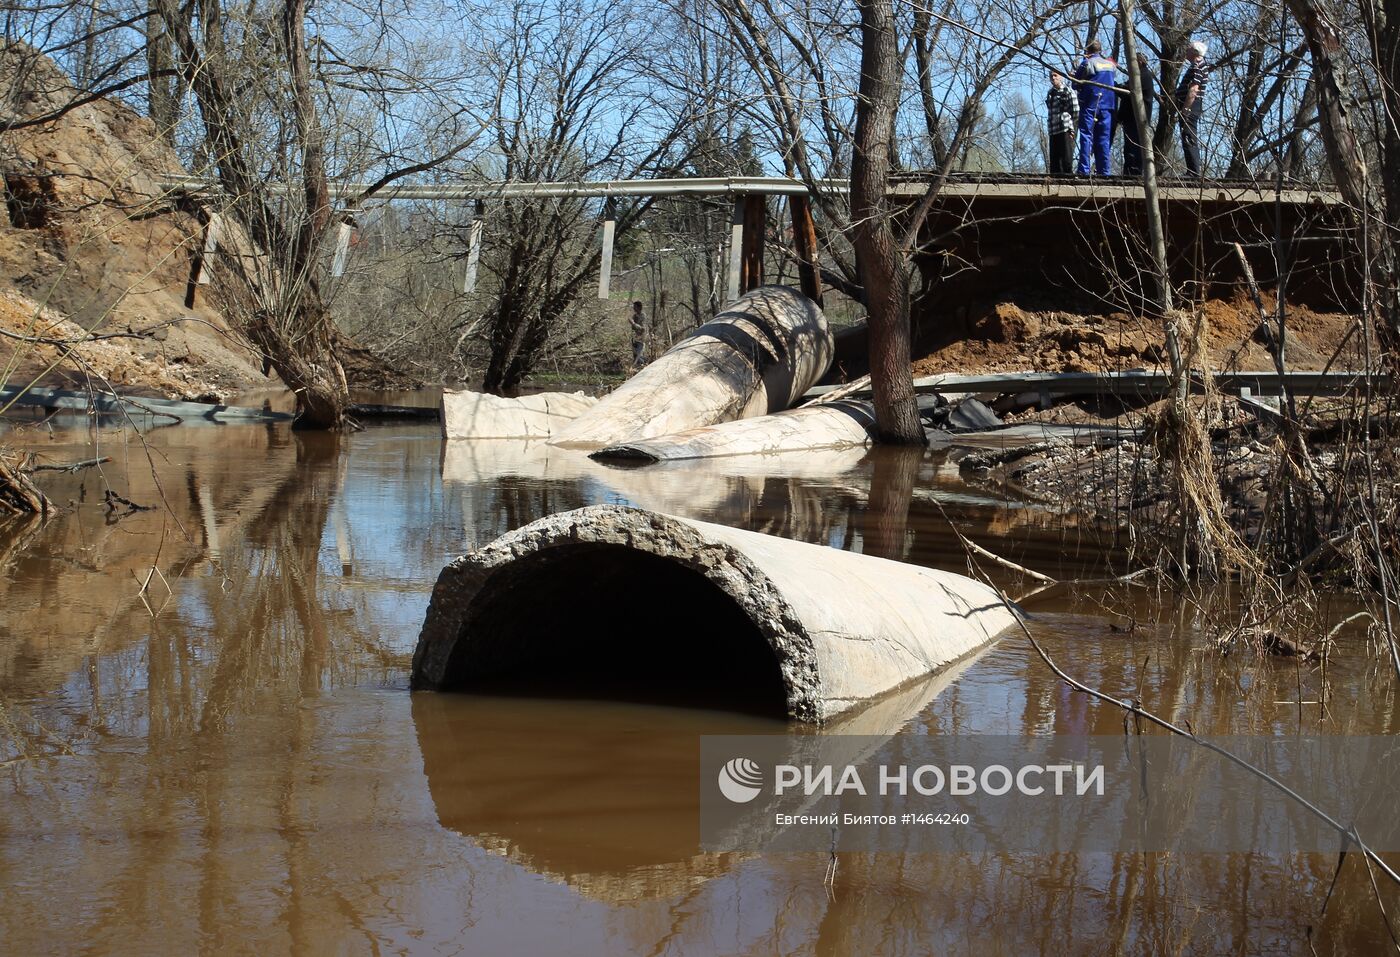 Паводок в Истринском районе Московской области